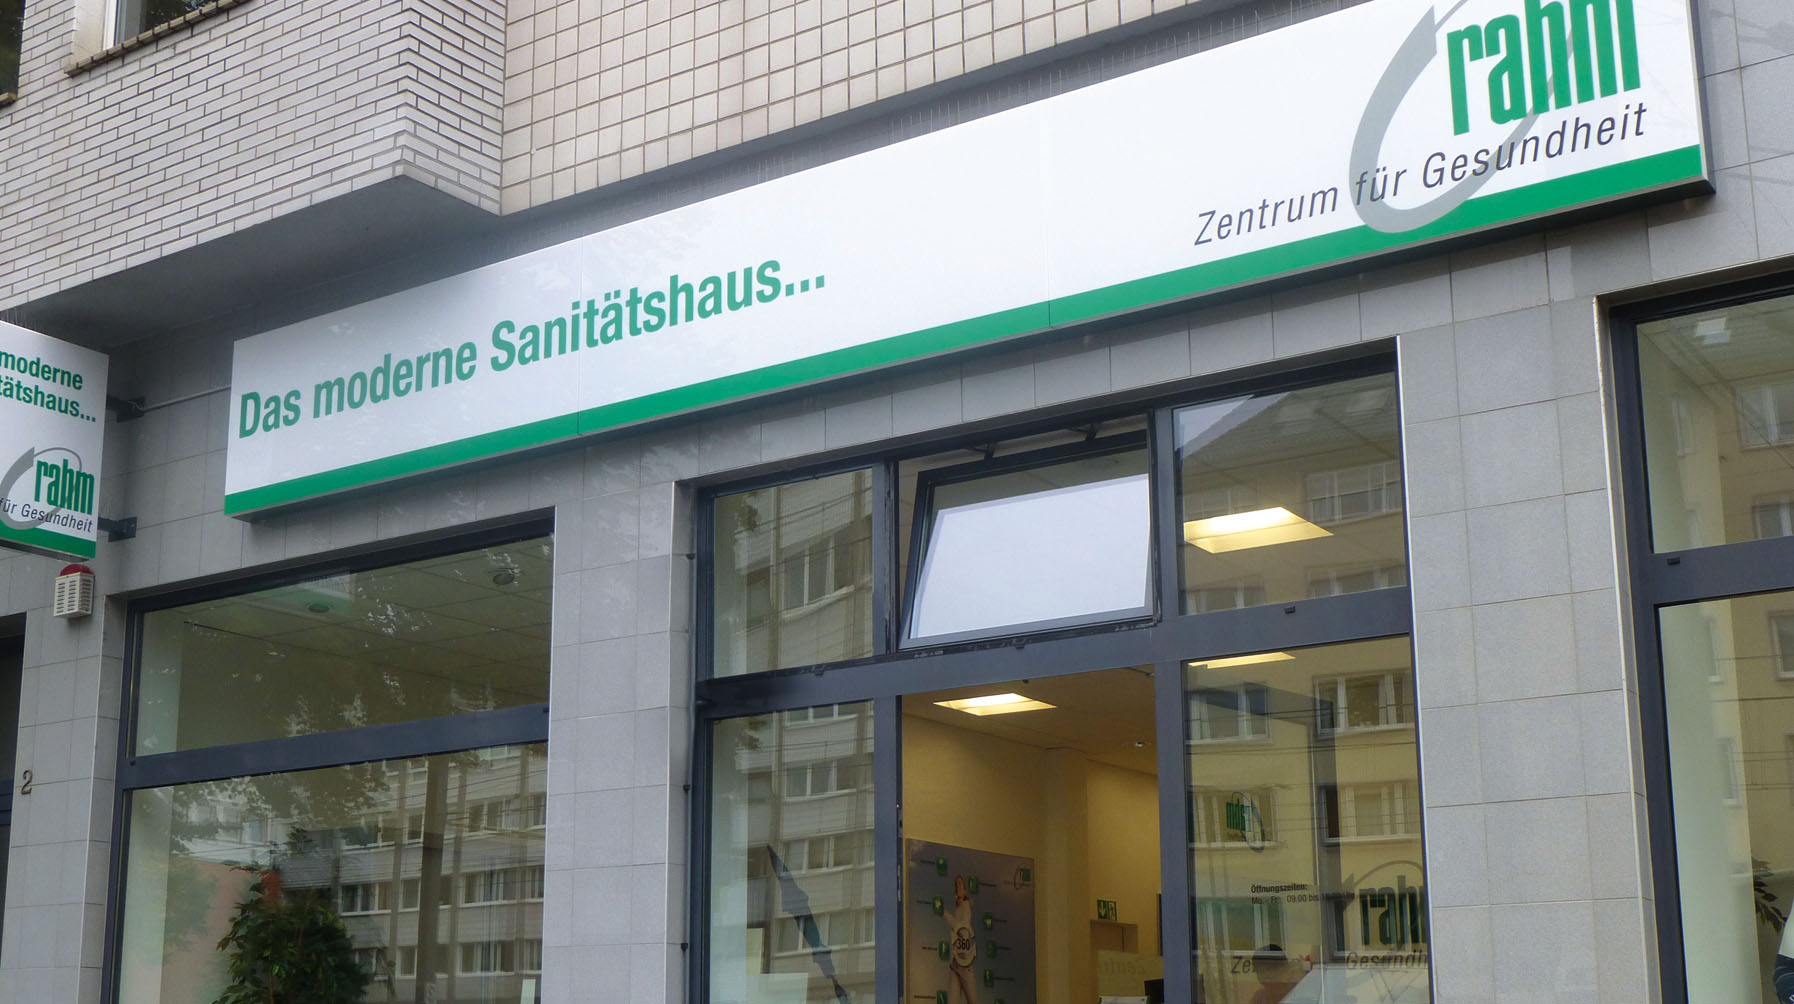 rahm-Zentrum-fuer-Gesundheit_Sanitaetshaus-Koeln-Deutz